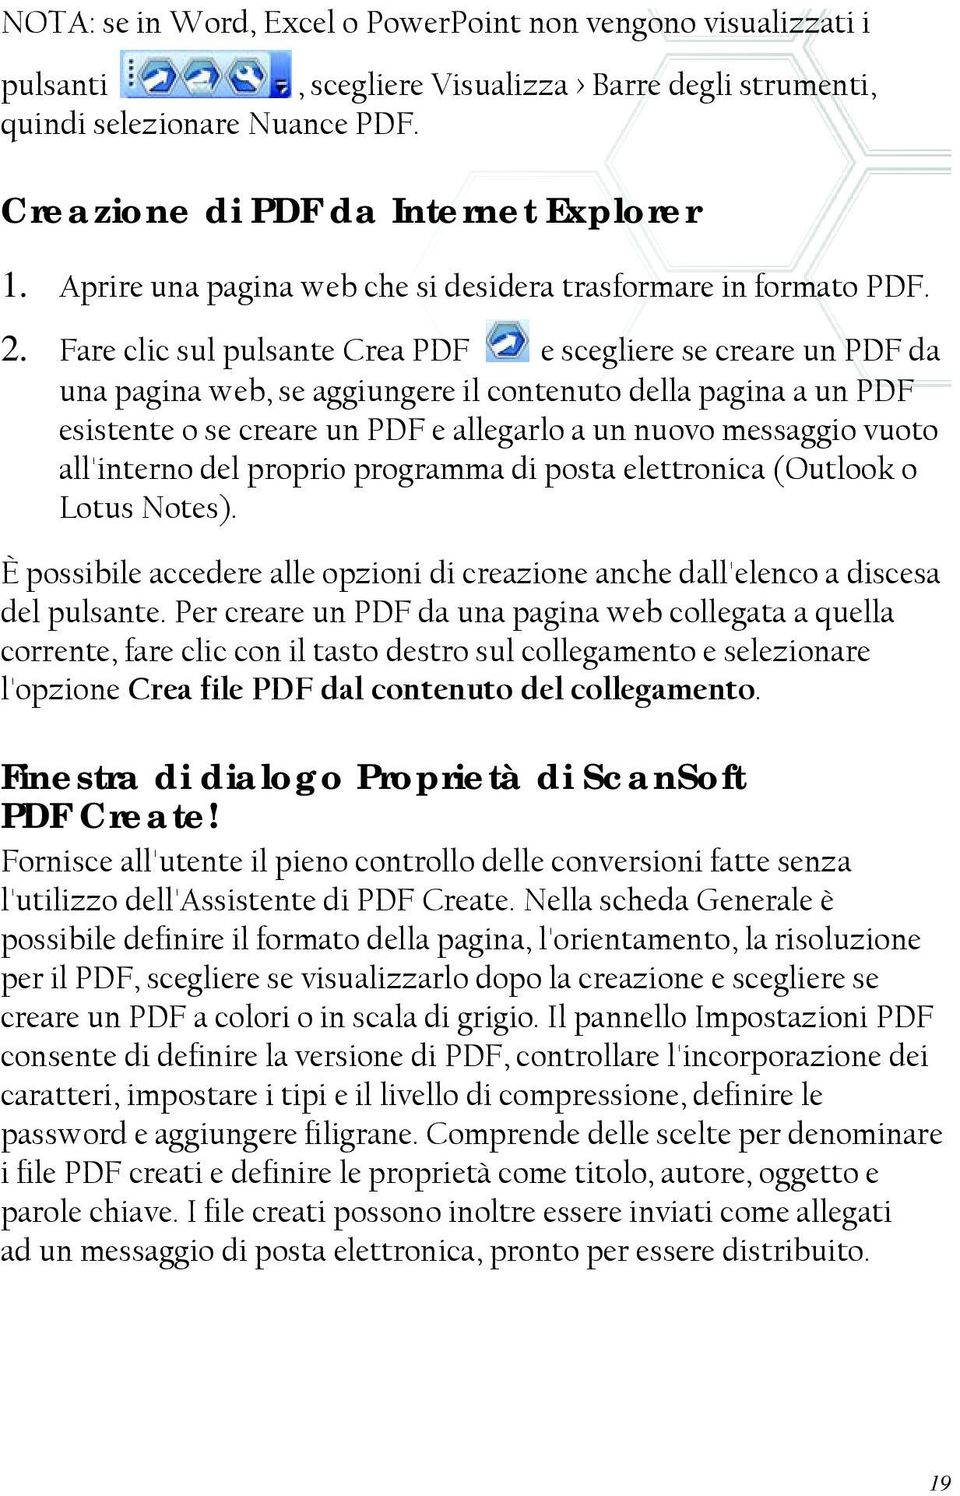 Fare clic sul pulsante Crea PDF e scegliere se creare un PDF da una pagina web, se aggiungere il contenuto della pagina a un PDF esistente o se creare un PDF e allegarlo a un nuovo messaggio vuoto